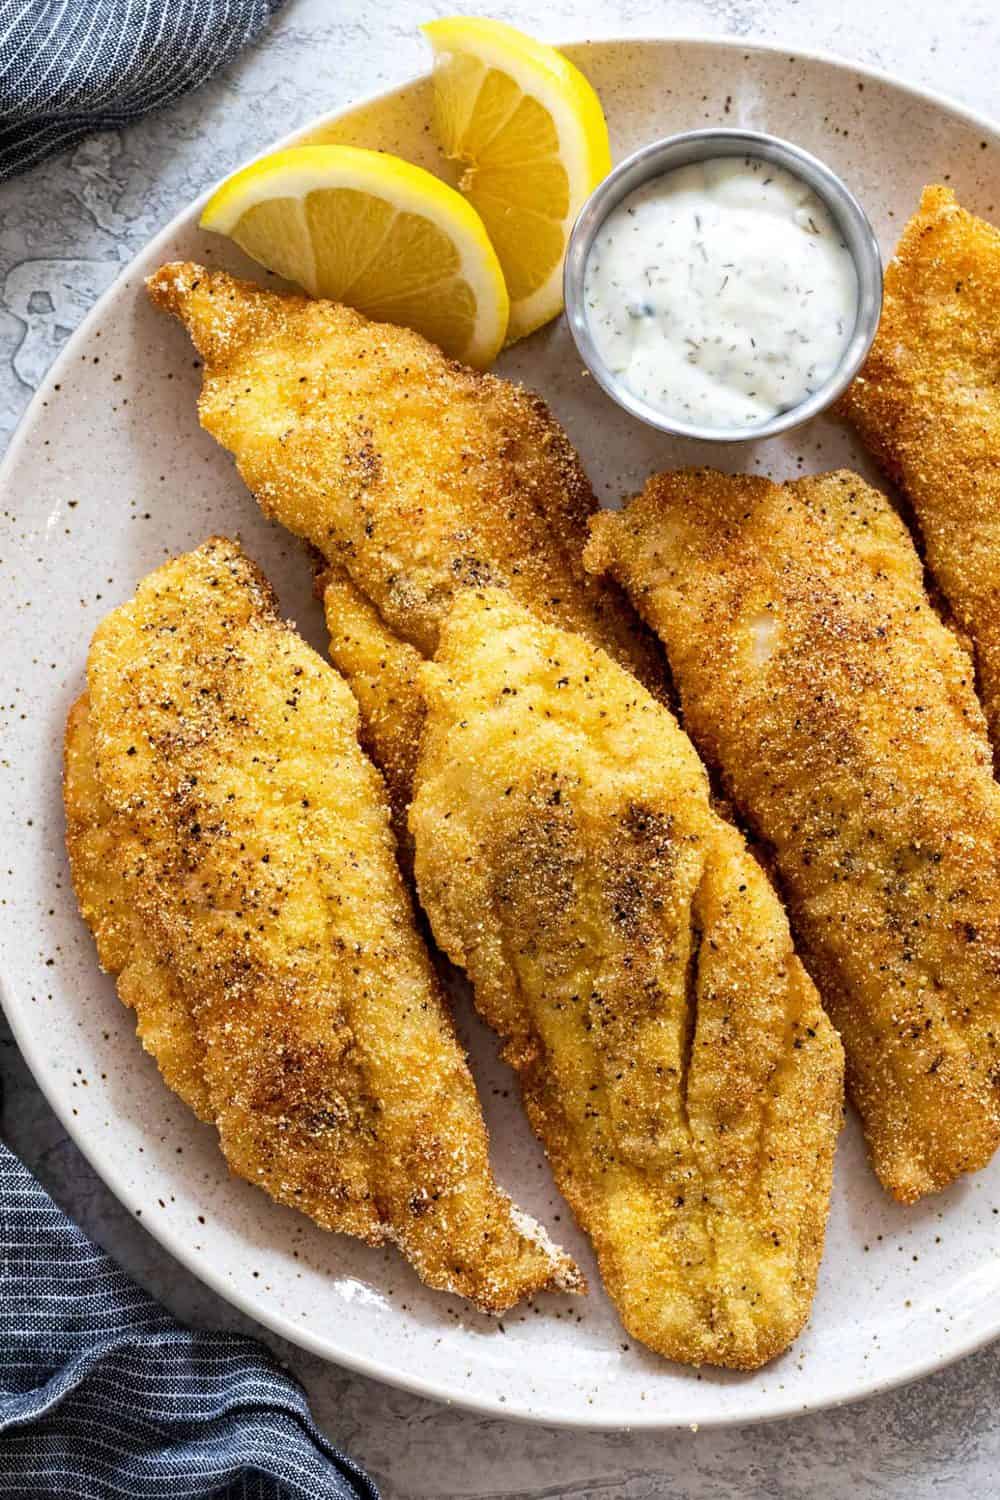 Fried Catfish - Varsha's Recipes